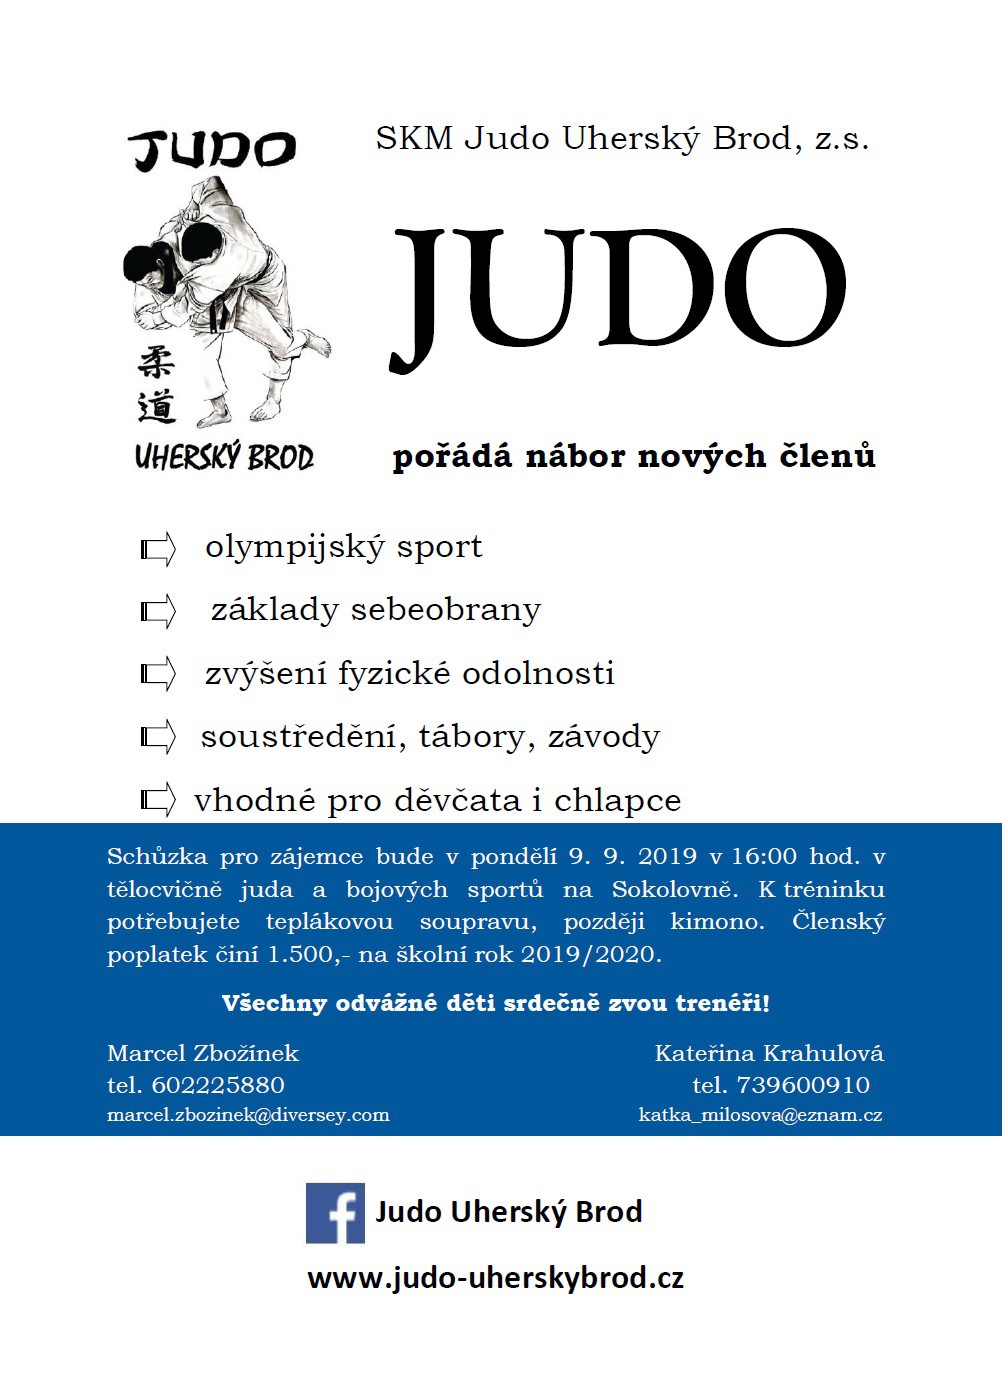 naborovy-letak-judo-2020.jpg